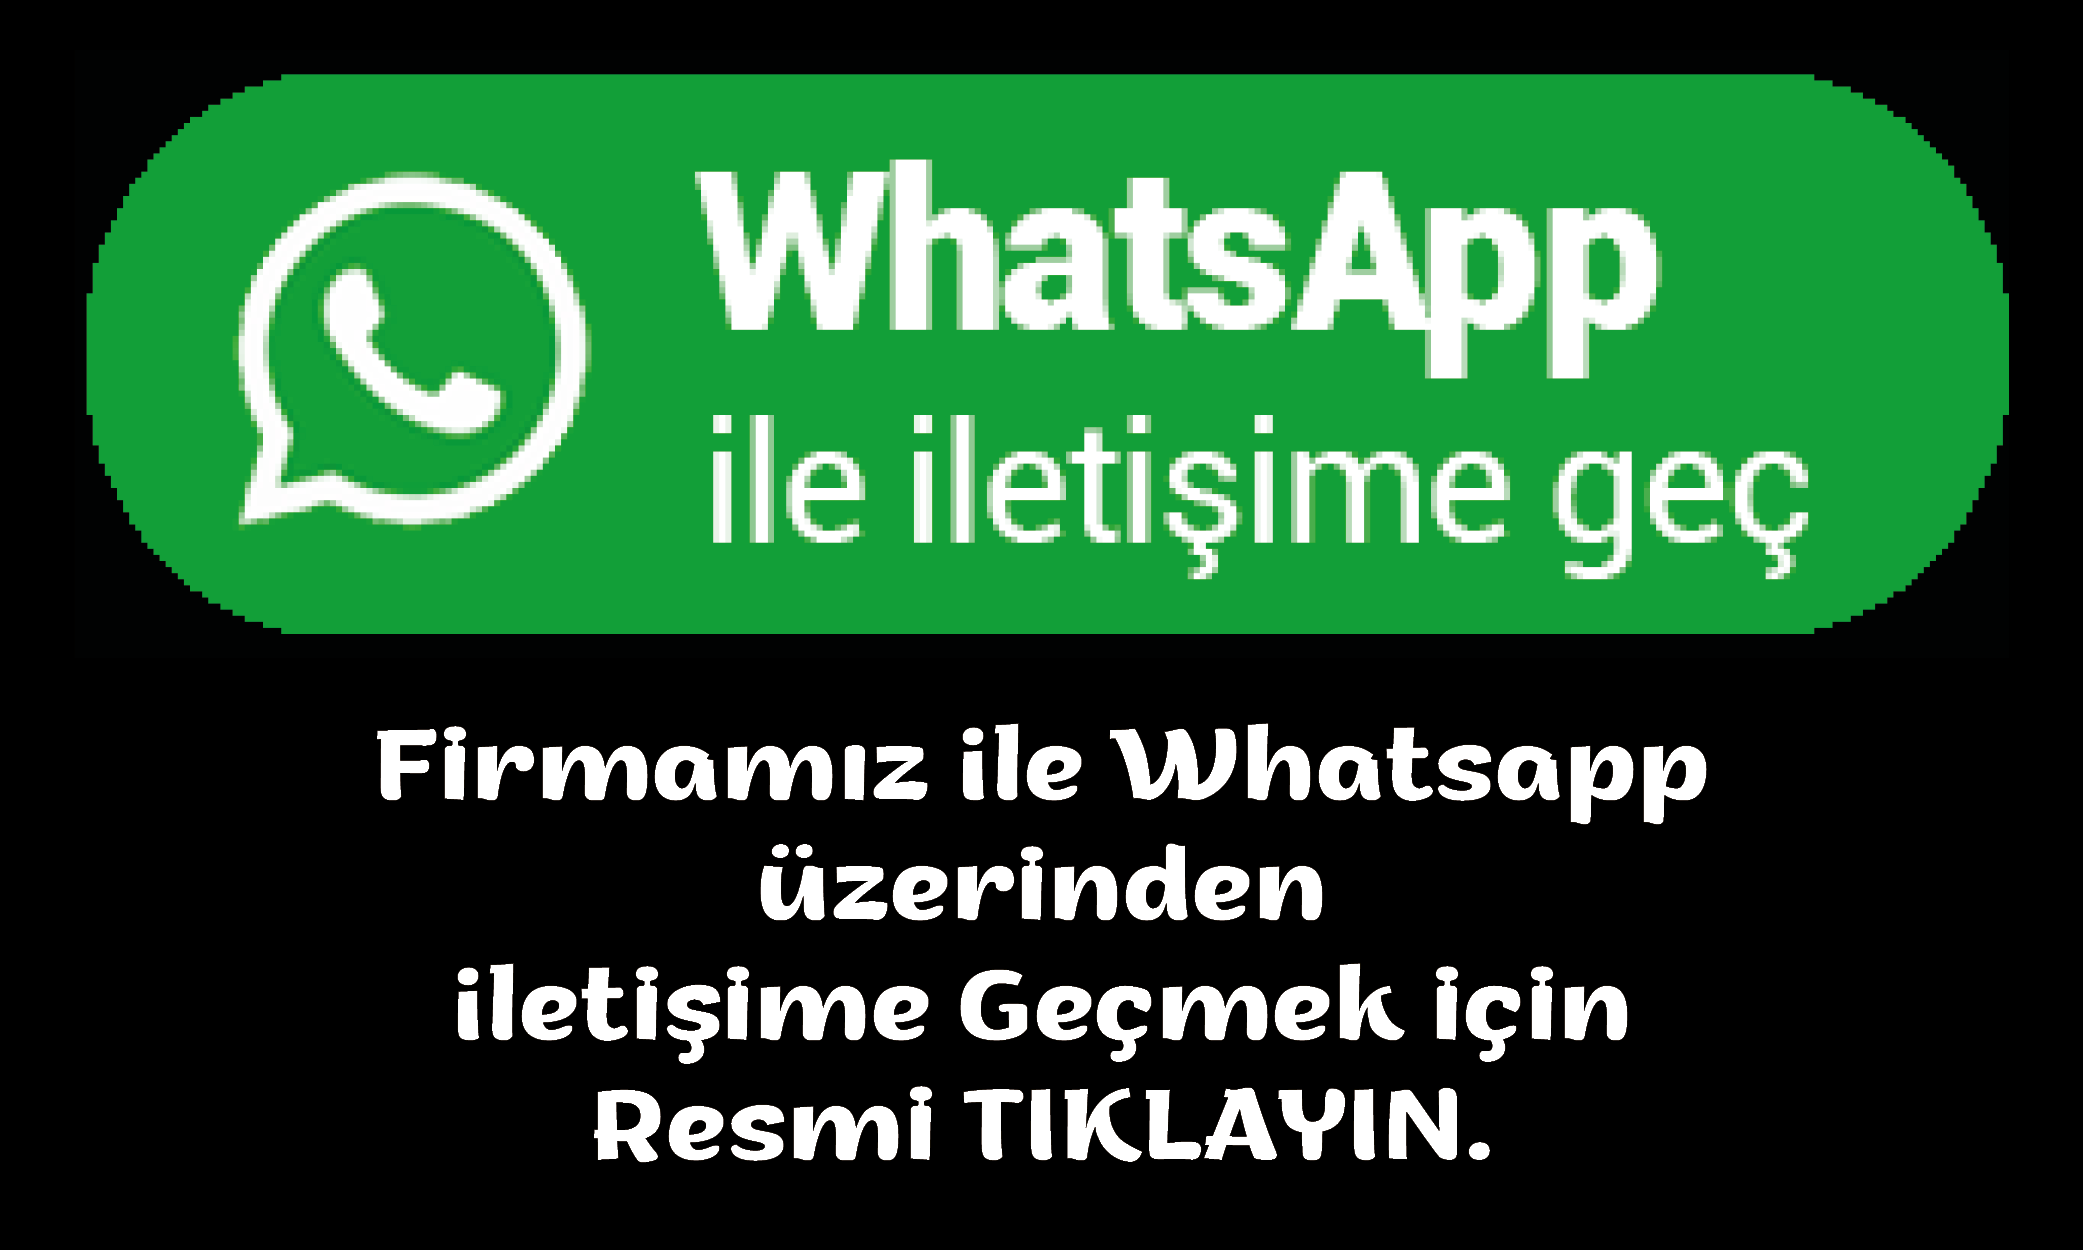  Firmamızla WhatsApp üzerinden iletişime geçin.